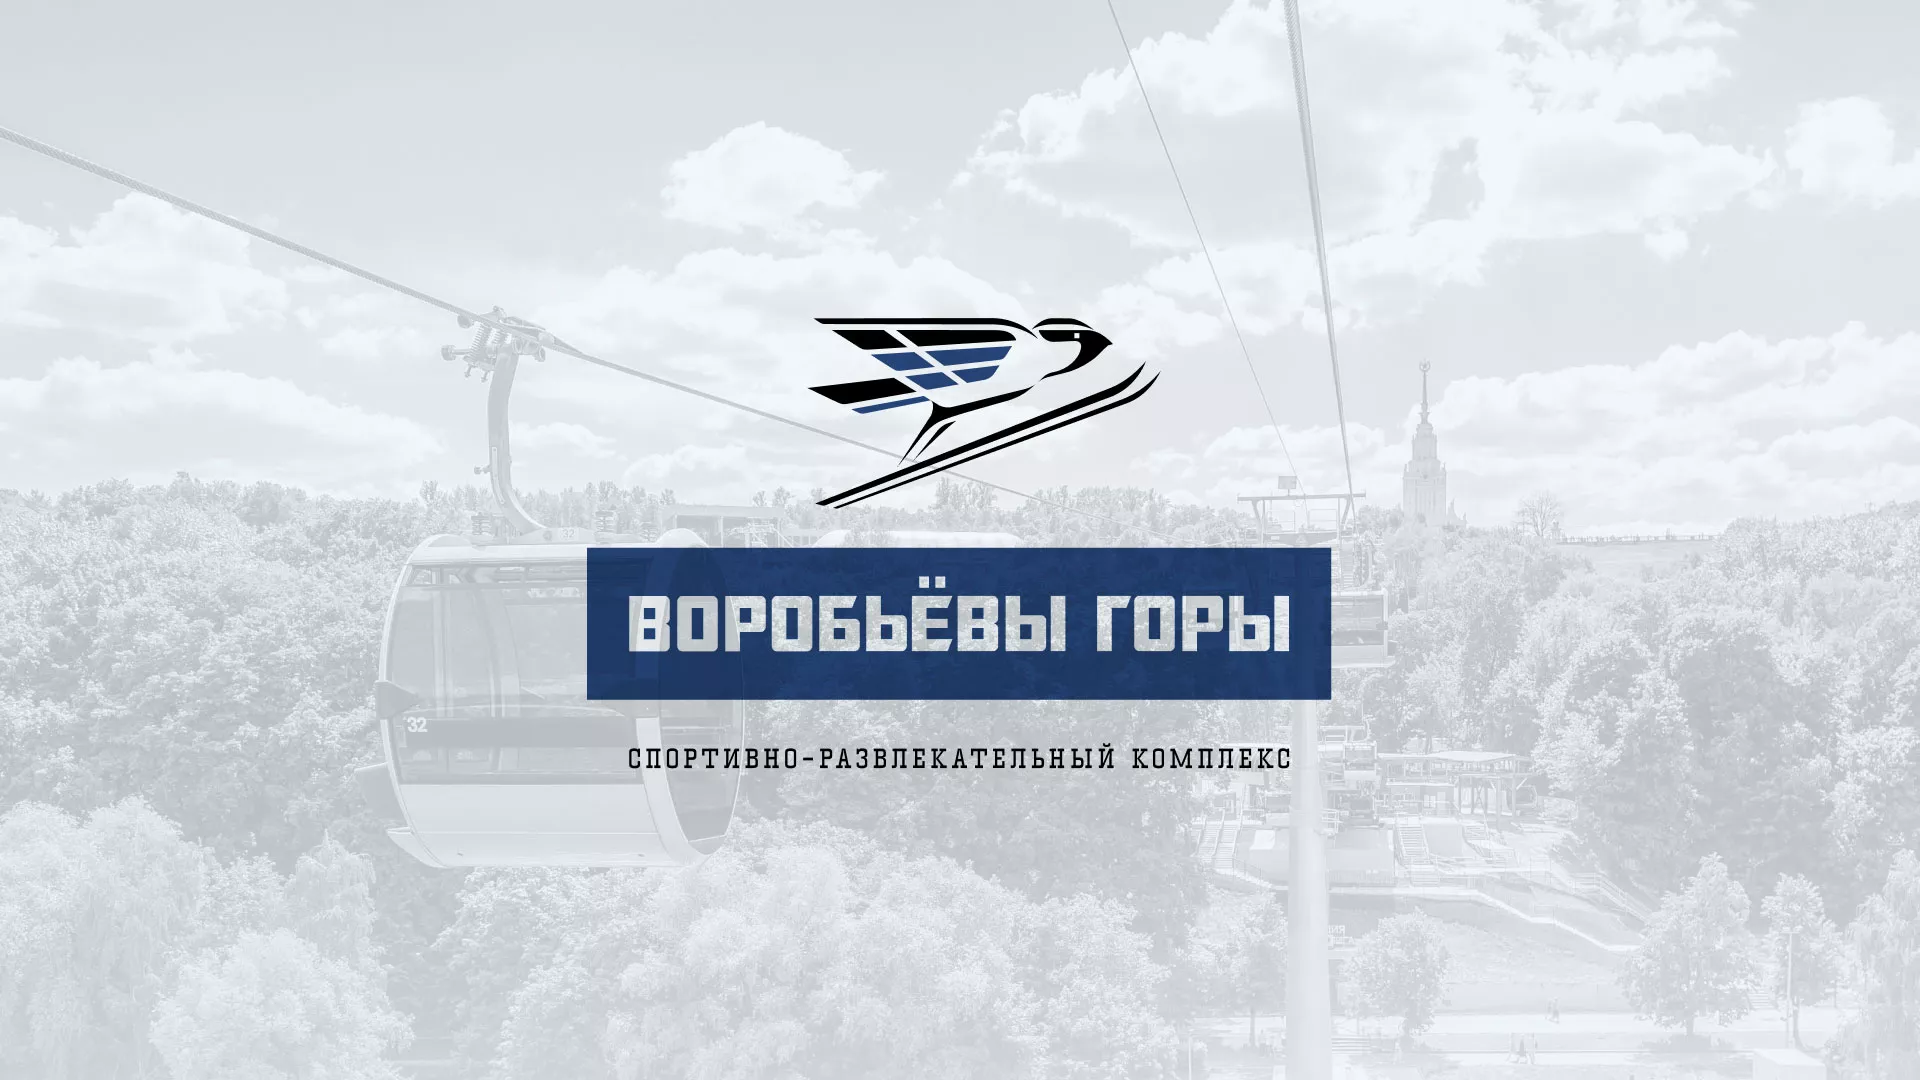 Разработка сайта в Дзержинском для спортивно-развлекательного комплекса «Воробьёвы горы»